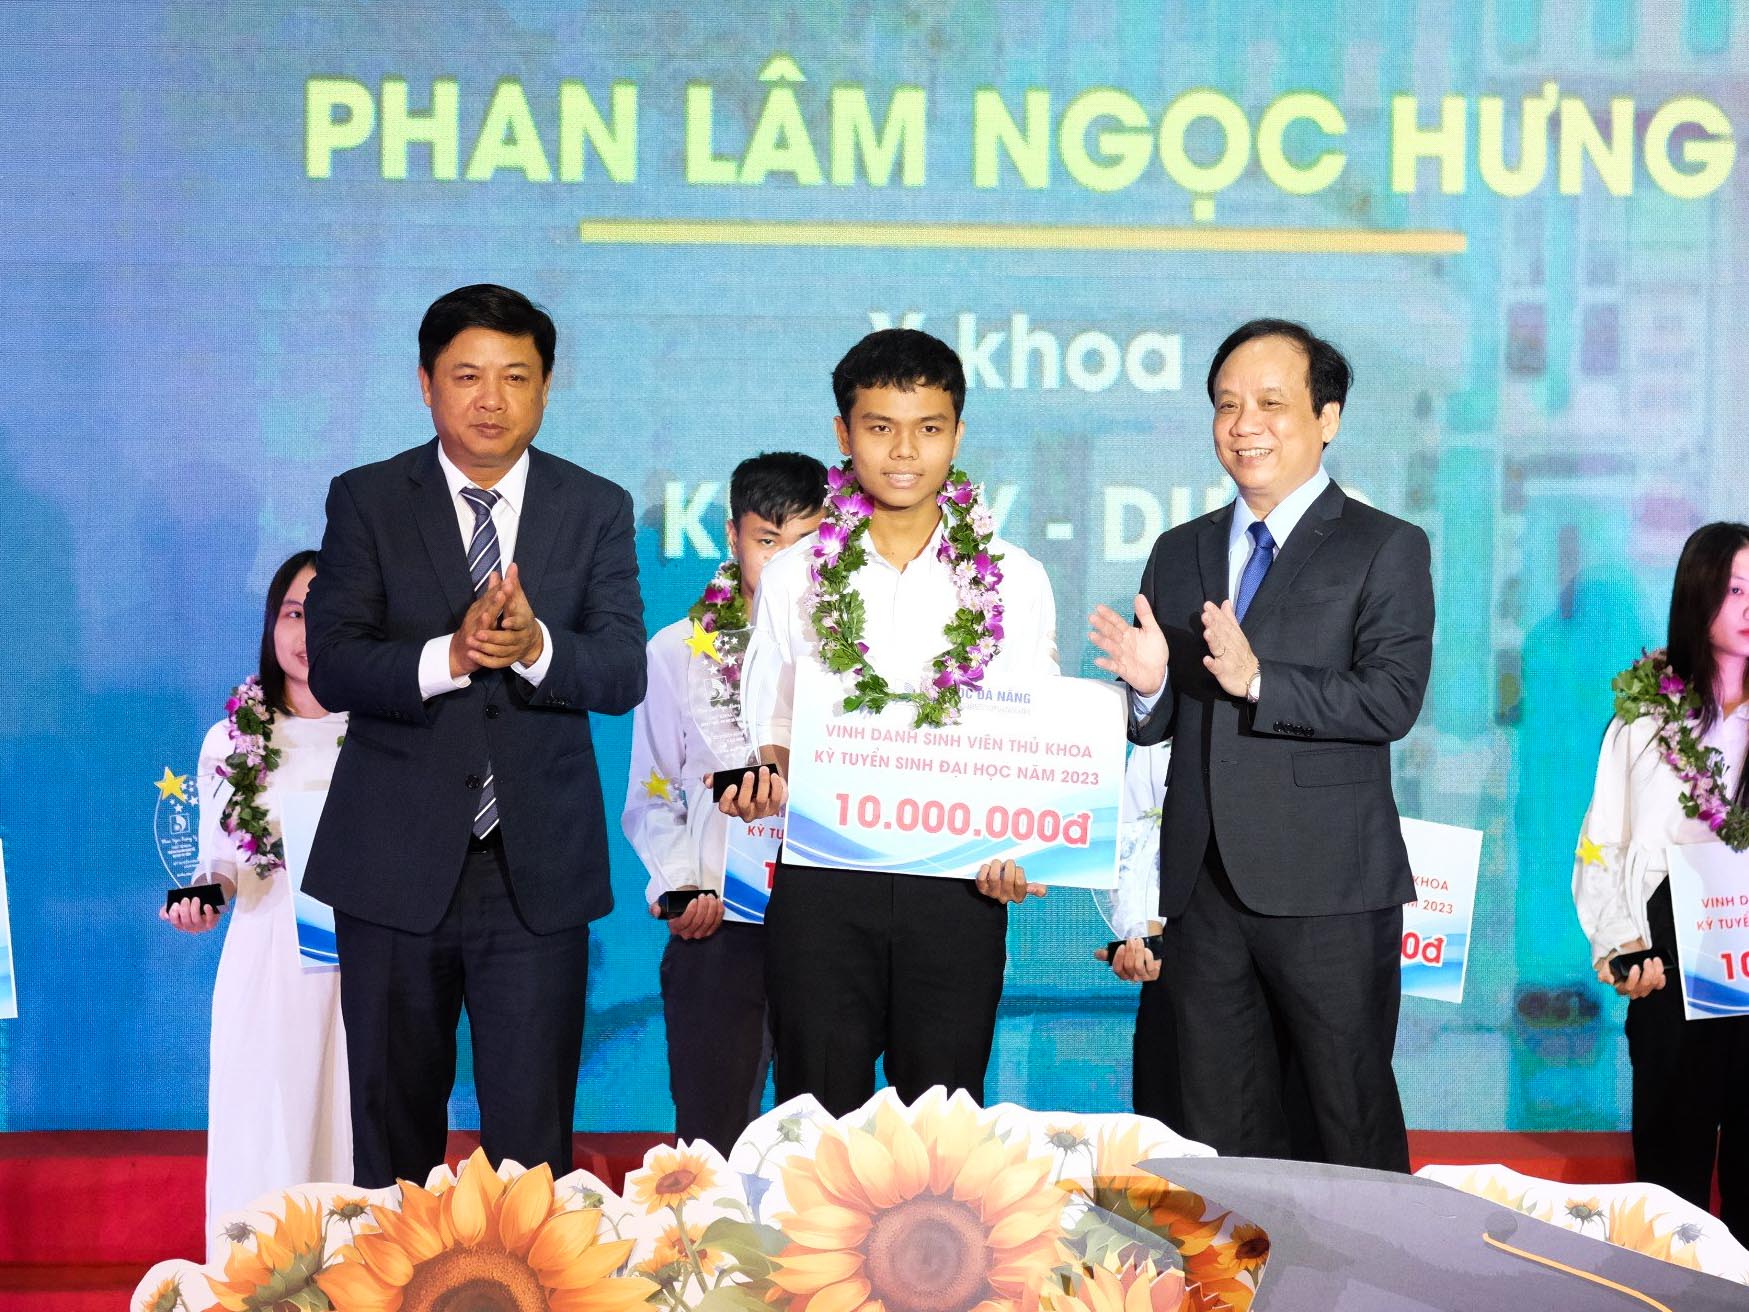 Đại học Đà Nẵng vinh danh 9 thủ khoa, trao học bổng năm 2023 - Ảnh 1.